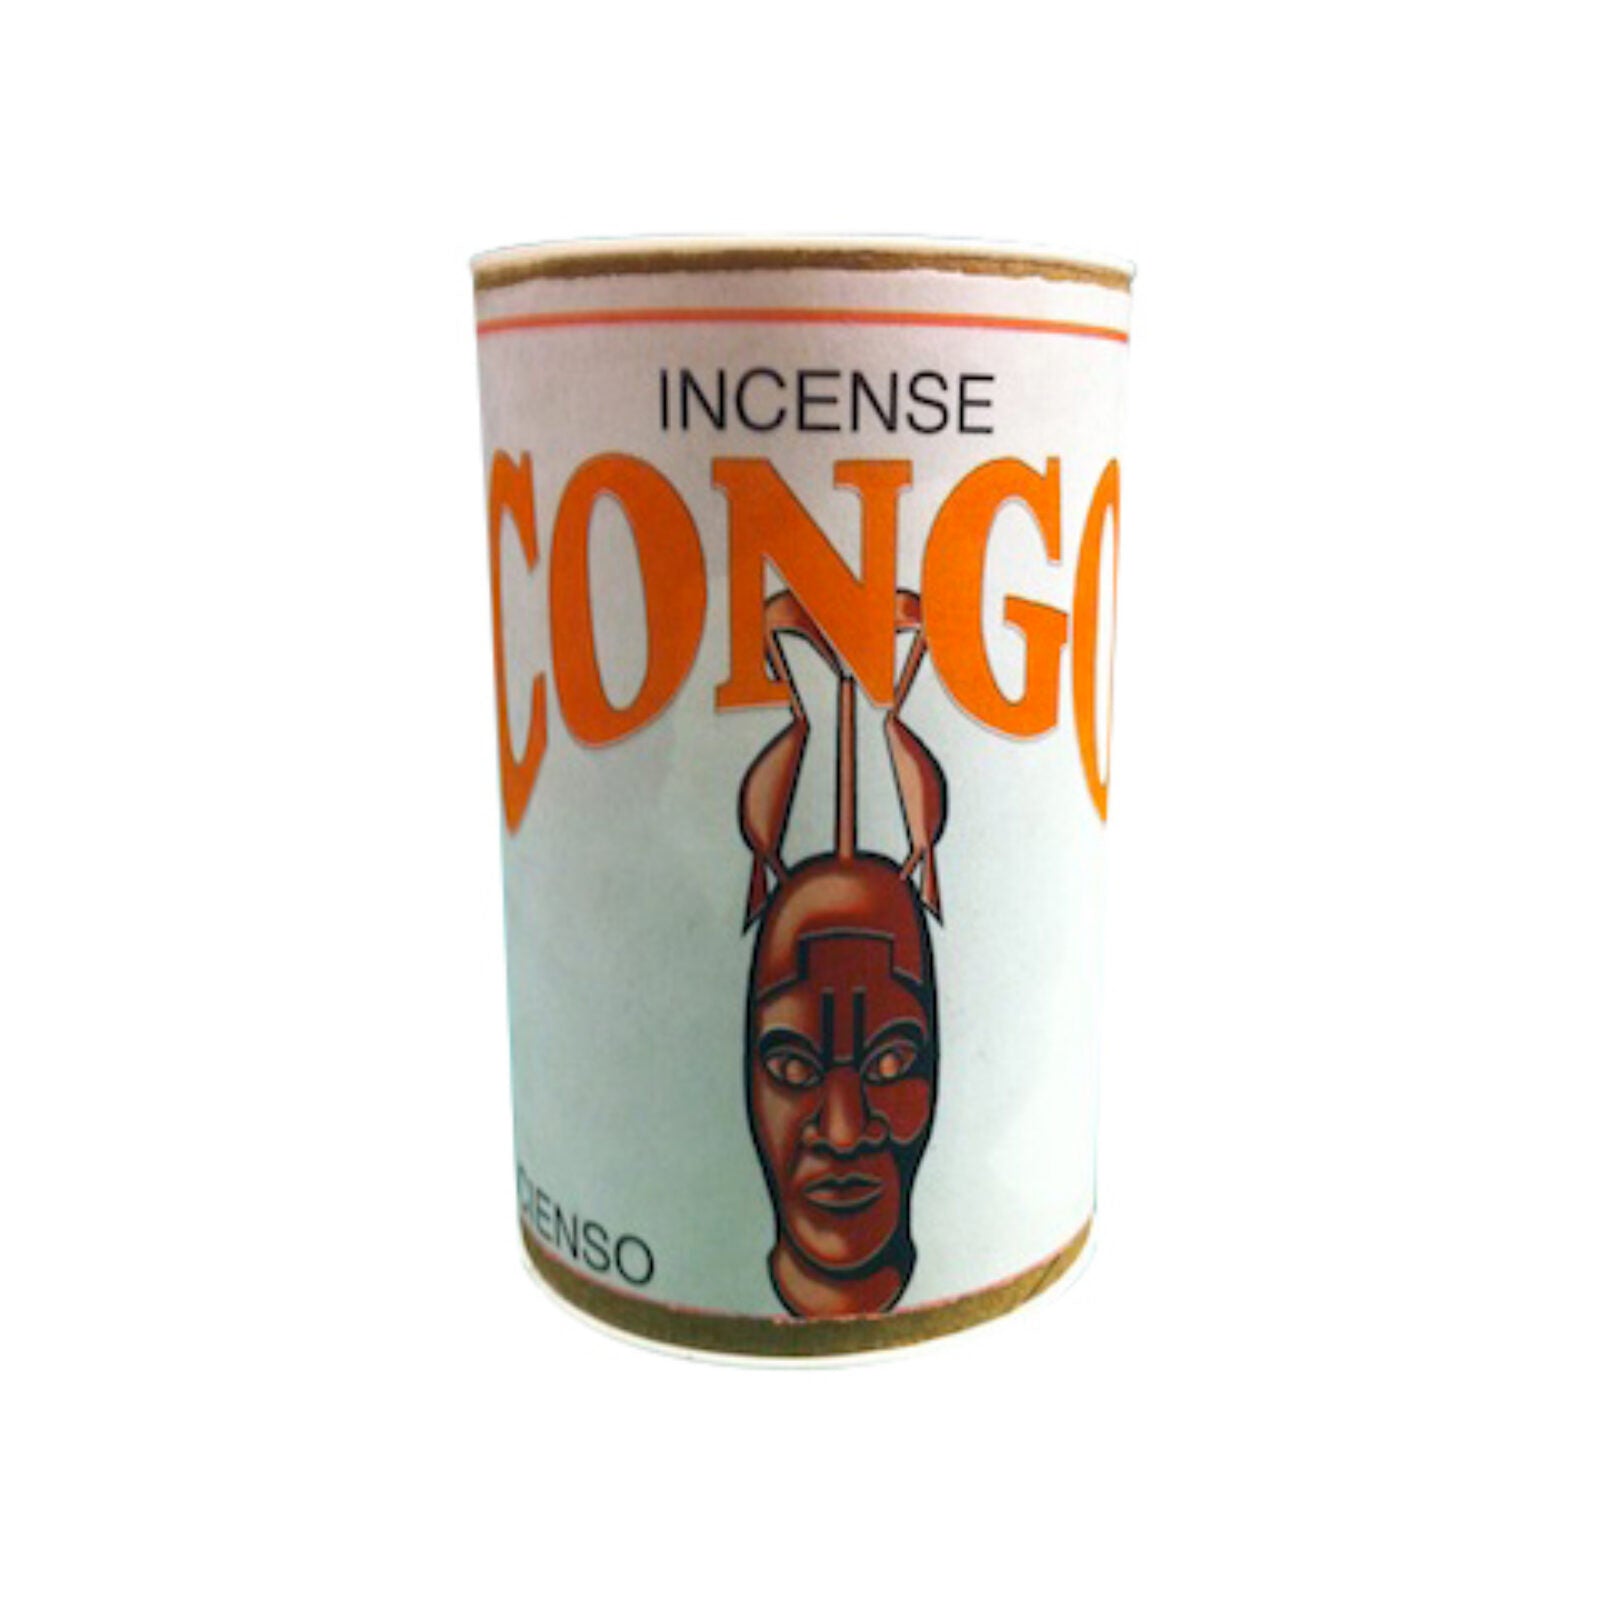 Congo Incense Powder